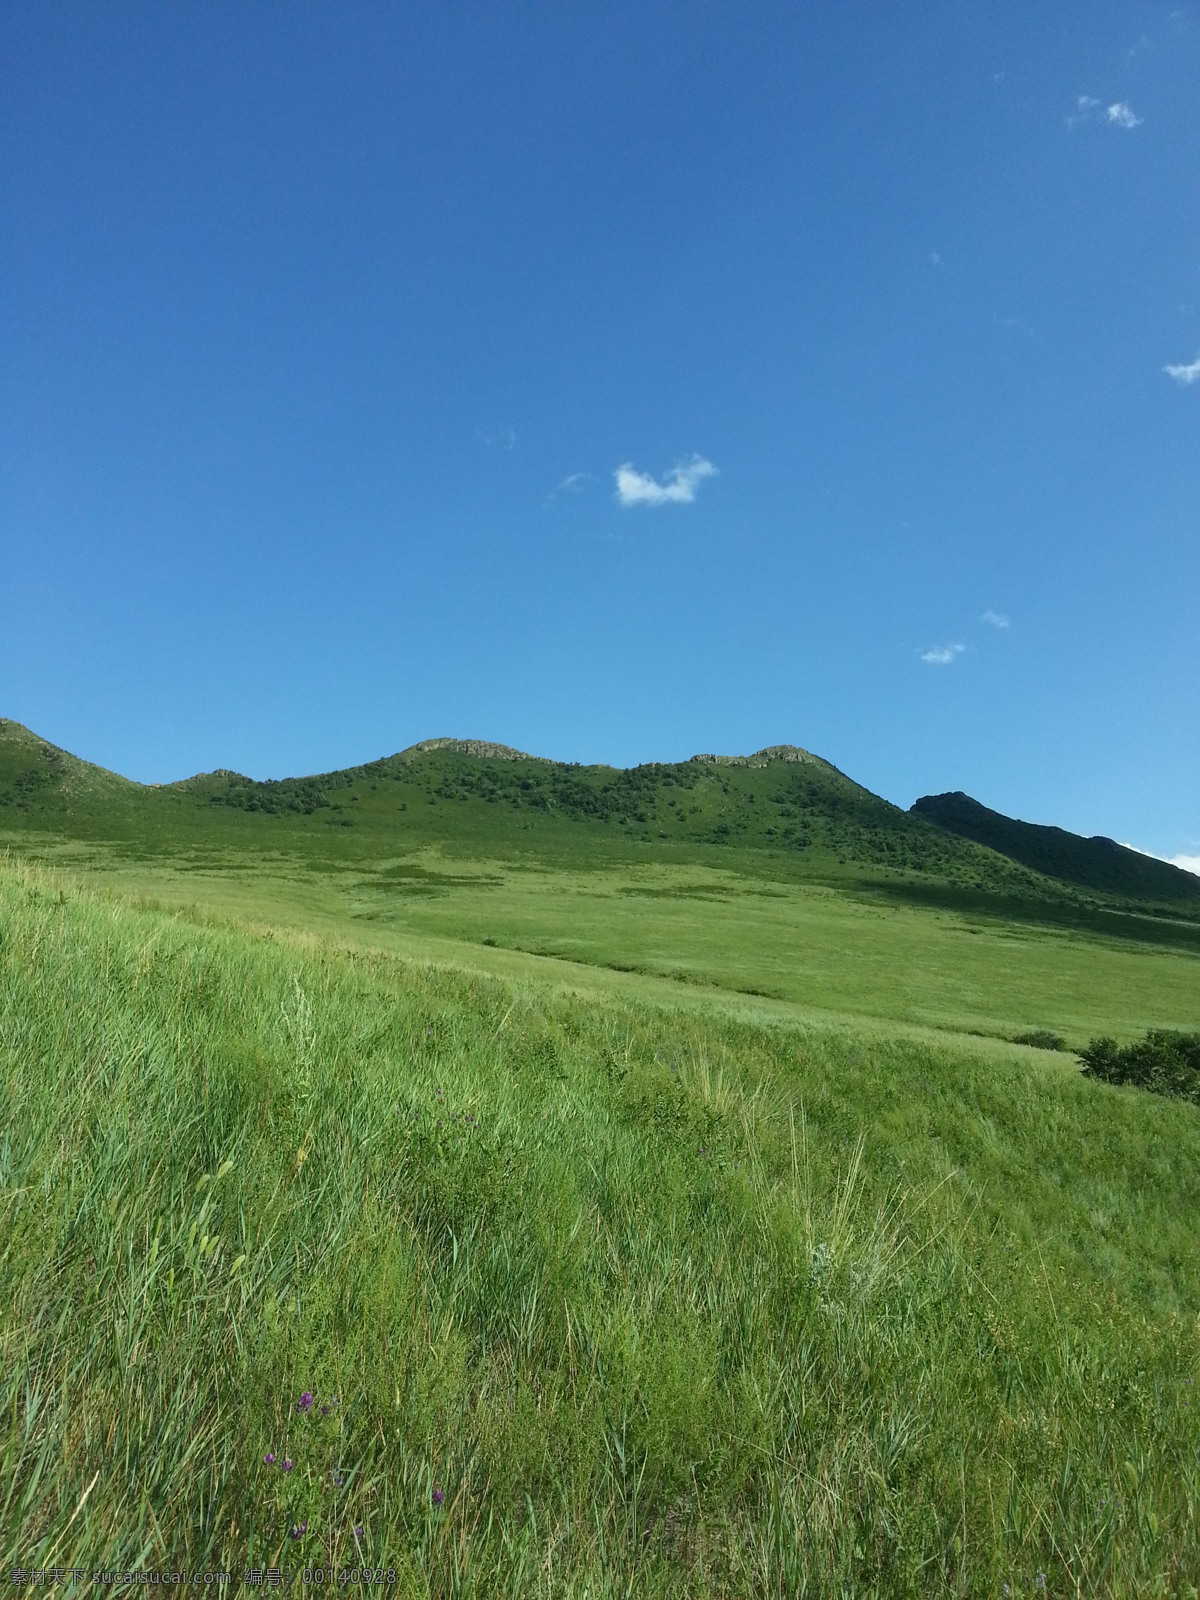 蓝天绿草 青山 绿地 草坪 蓝蓝的天空 山峦 云朵 扎鲁特旗 草原 风光 旅游摄影 自然风景